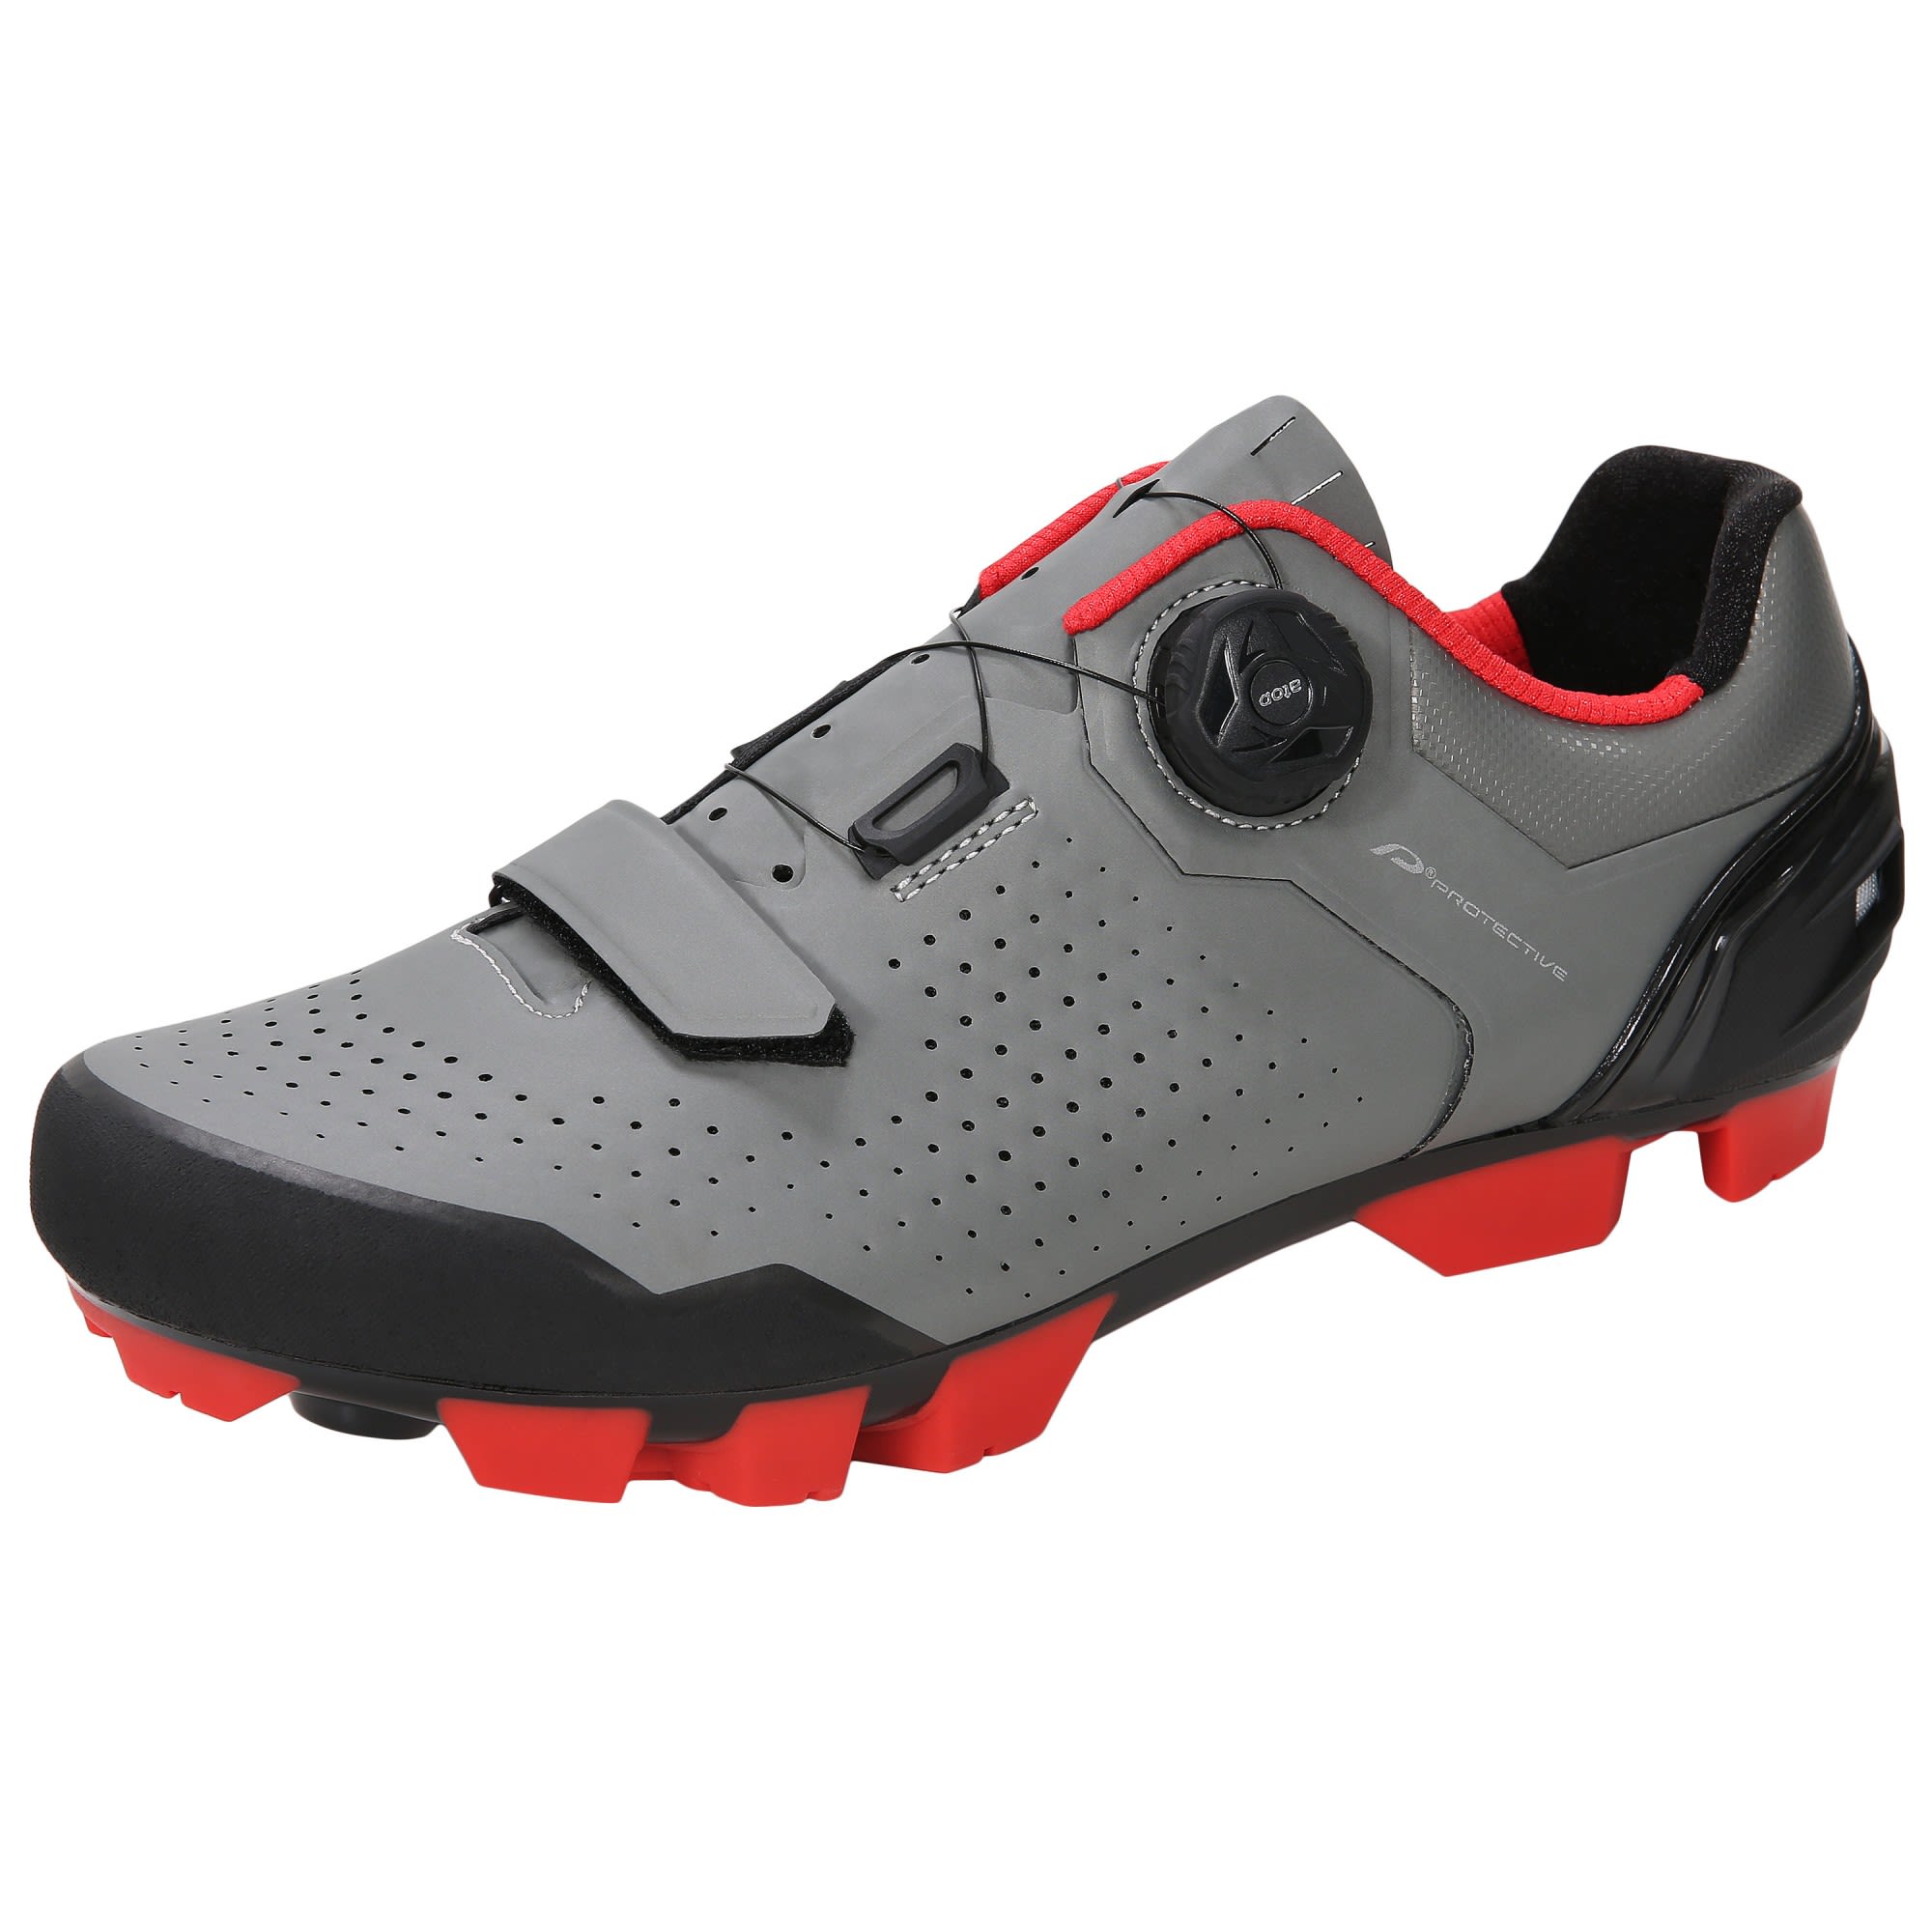 Protective P-lunar Rocks Shoes Grau | Größe EU 36 |  Gravel Fahrradschuh